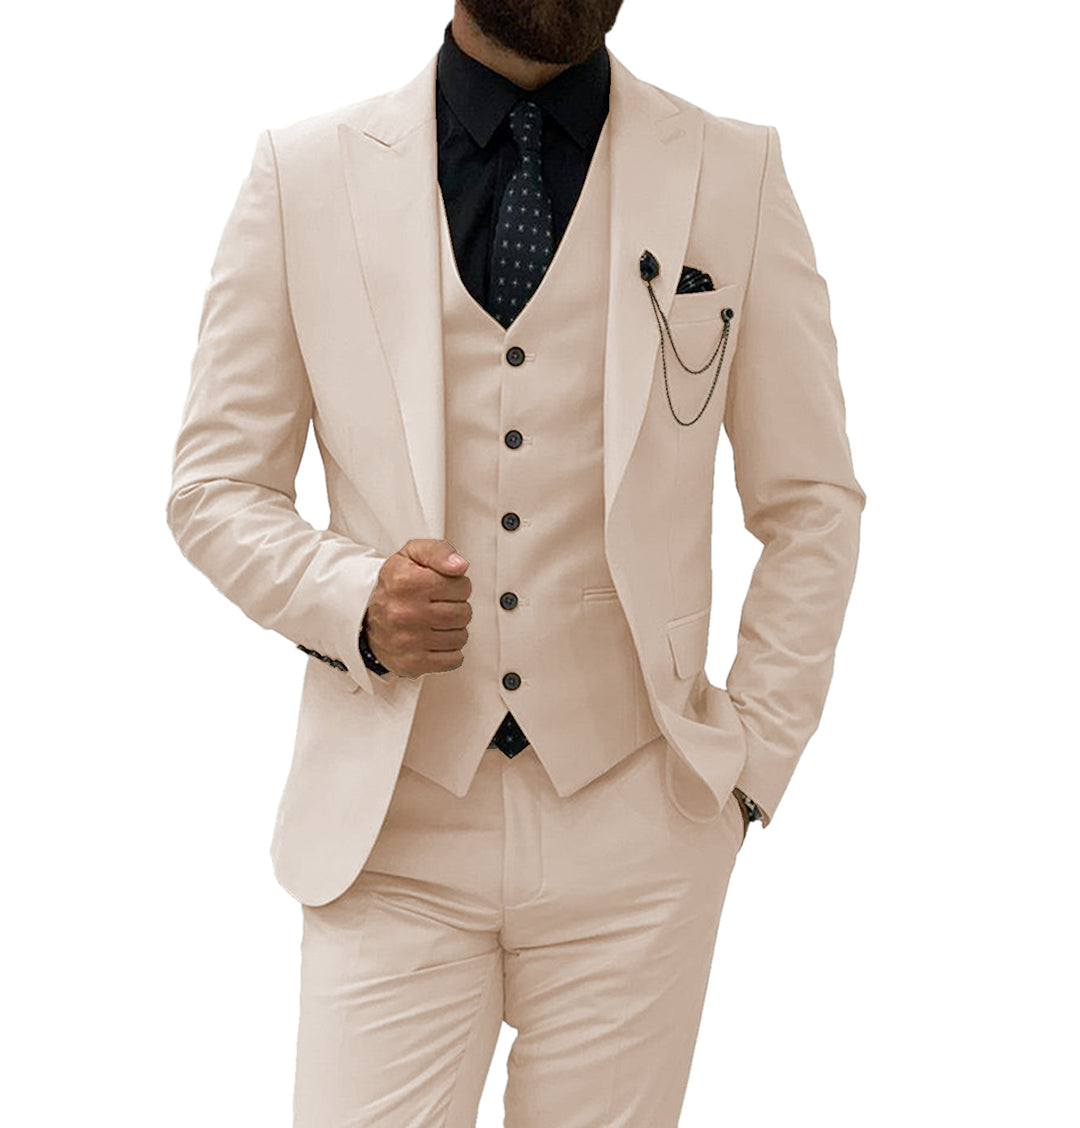  Men's 3-Piece Suit Regular Fit Peak Lapel Suit One Button Party  Business Wedding Jacket Vest & Pant Black : Clothing, Shoes & Jewelry